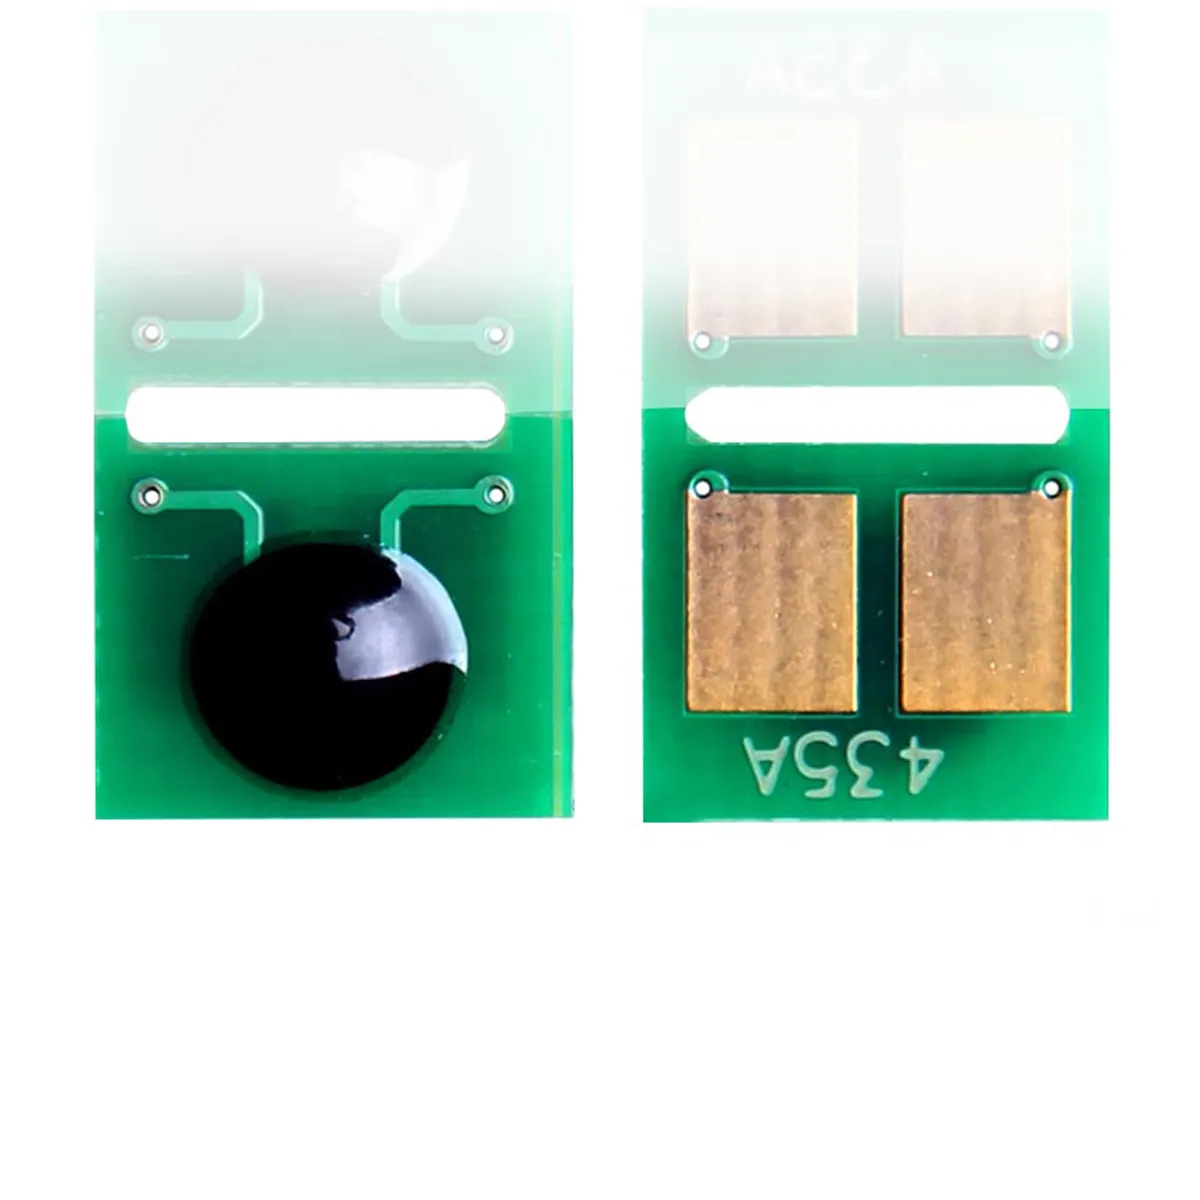 Cips yepyeni toner HP için kartuş Mono lazer jet pro M-1130 cips lazer sıfırlama yazıcı cips/HP çanta mühürleyen